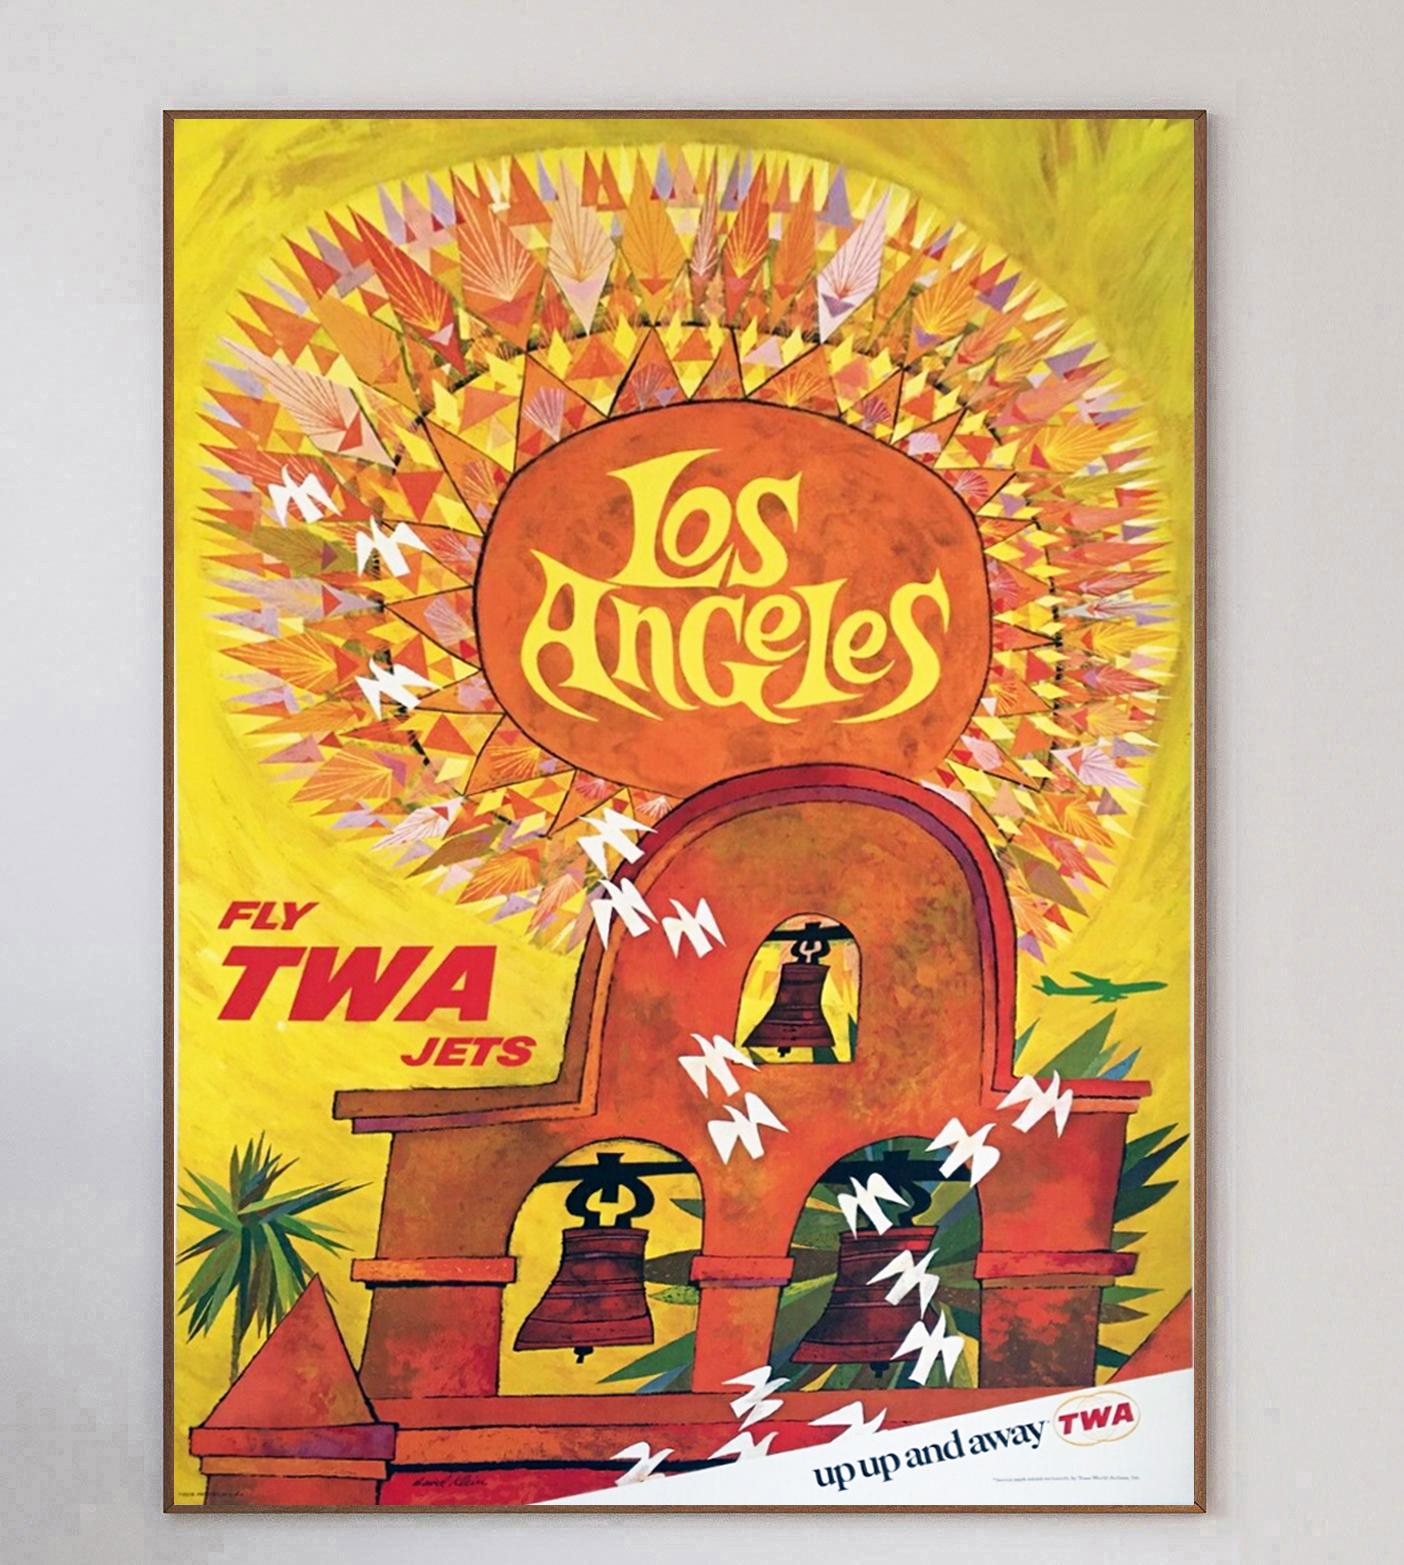 Cette affiche a été créée en 1959 pour la Trans World Airlines d'Howard Hughes afin de promouvoir ses liaisons avec Los Angeles, en Californie. Illustré par l'influent artiste américain David Klein, ce motif présente une vue merveilleusement